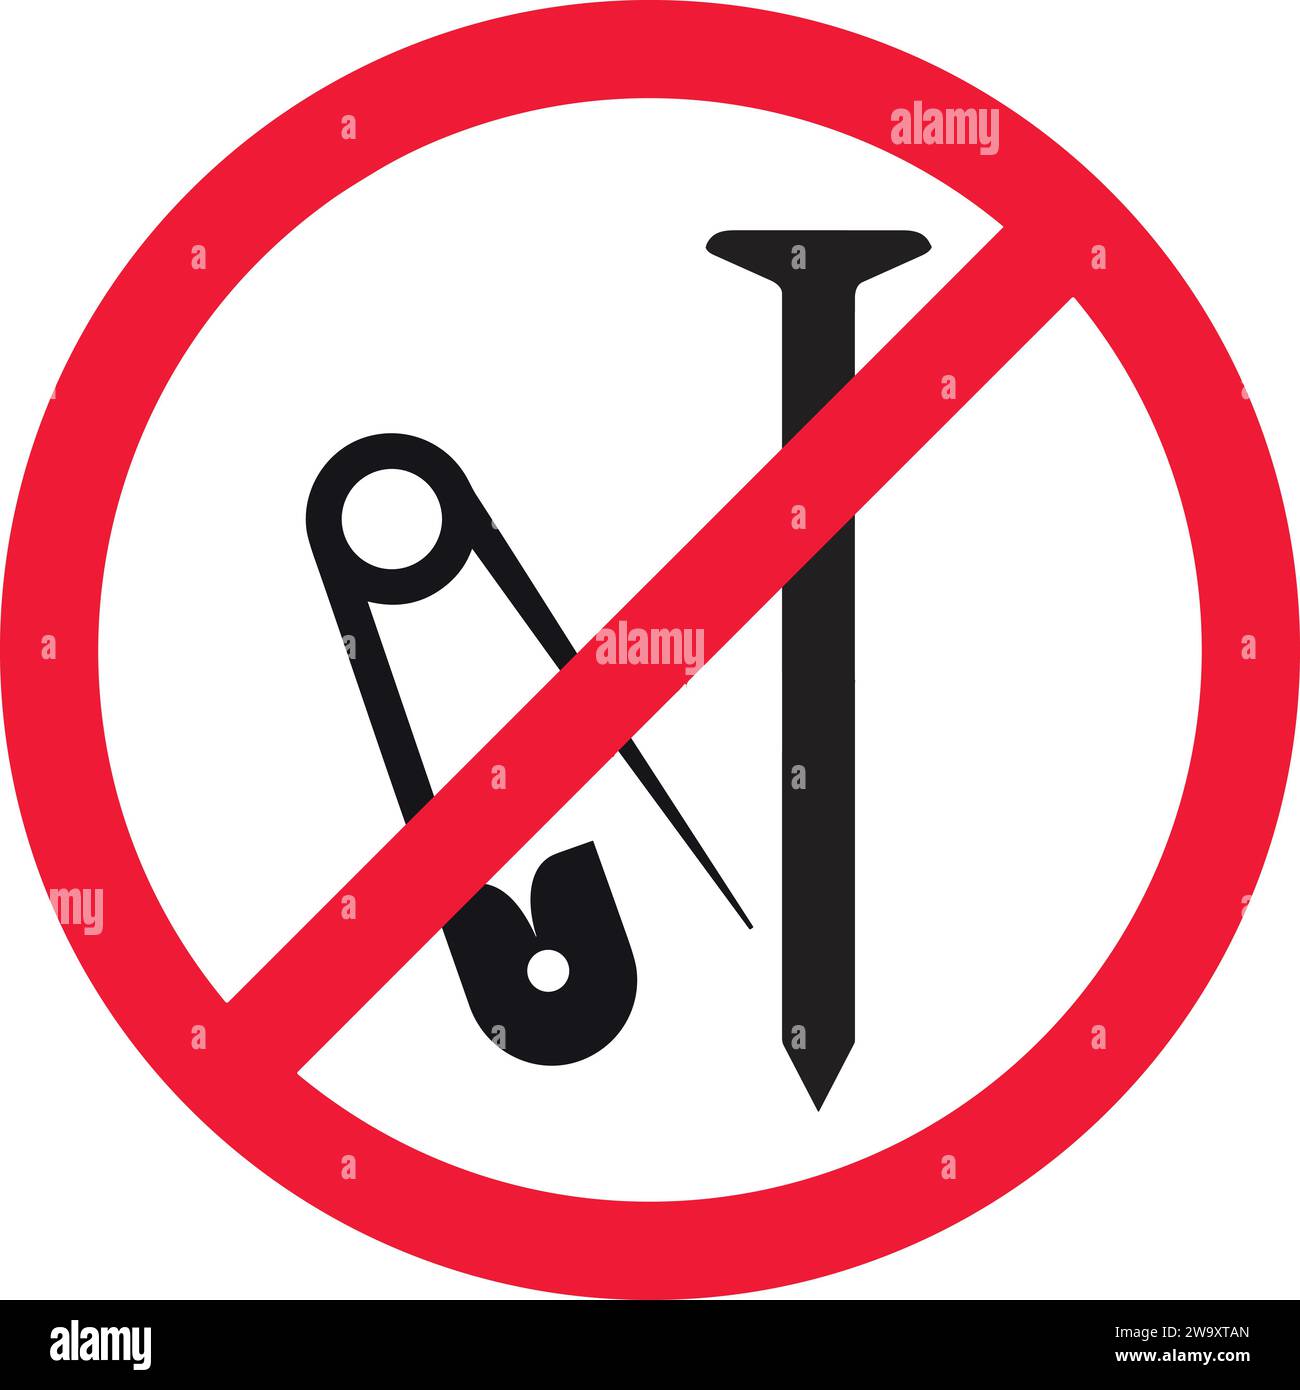 Metallnagel nicht erlaubt | keine Sicherheitsnadel | scharfes Objekt nicht erlaubt | Verbotsschilder Metallnägel und Sicherheitsnadel Stock Vektor